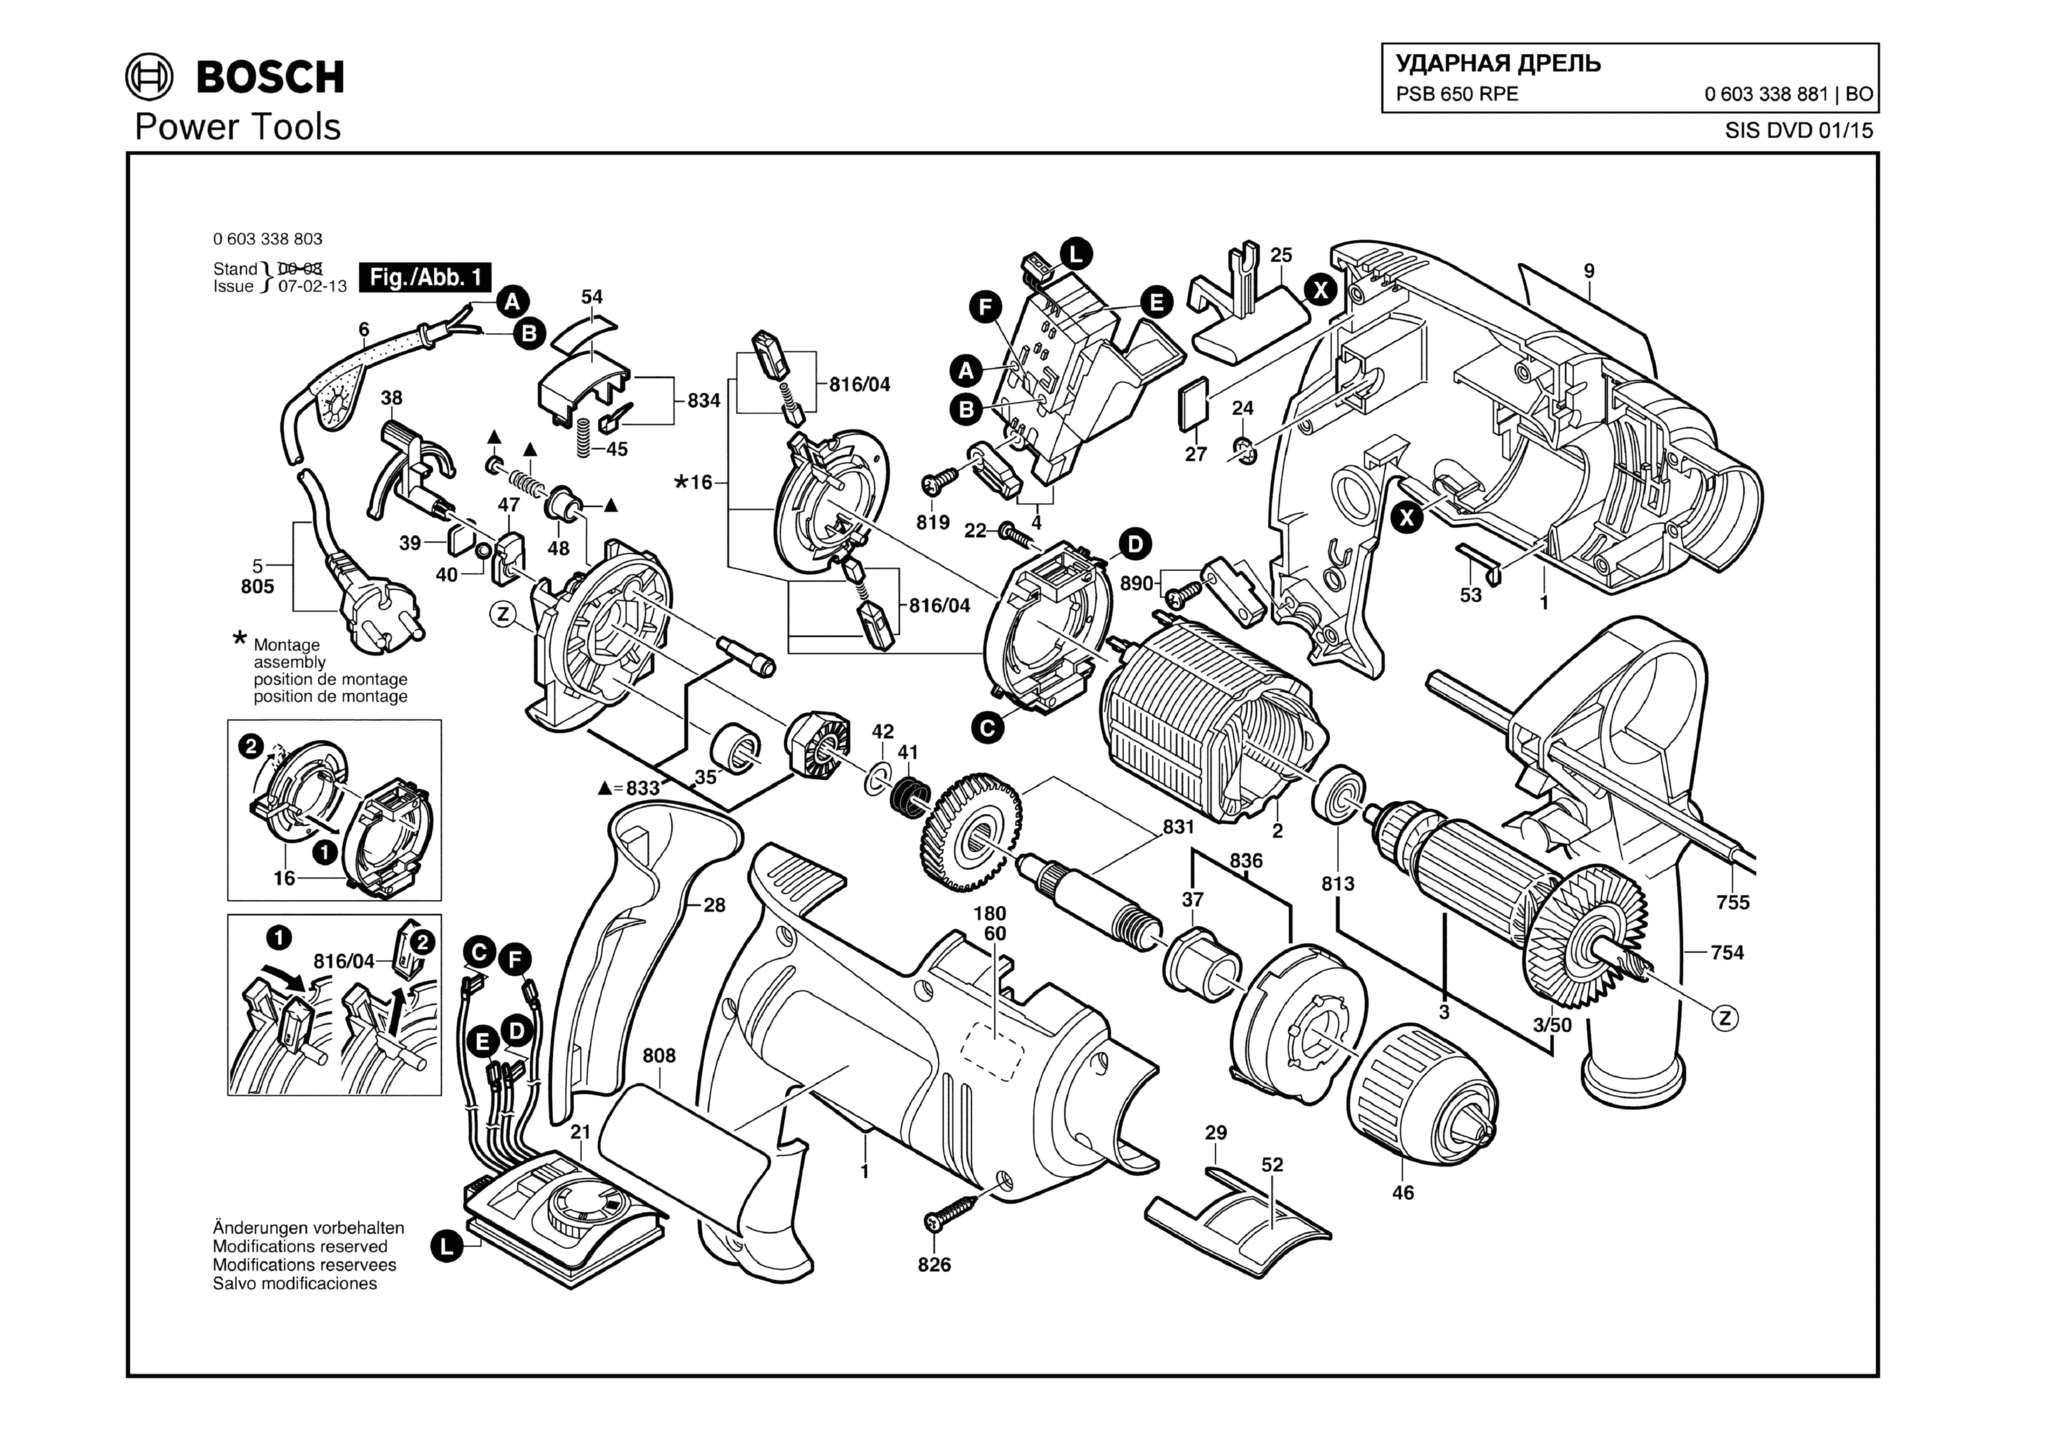 Запчасти, схема и деталировка Bosch PSB 650 RPE (ТИП 0603338881)